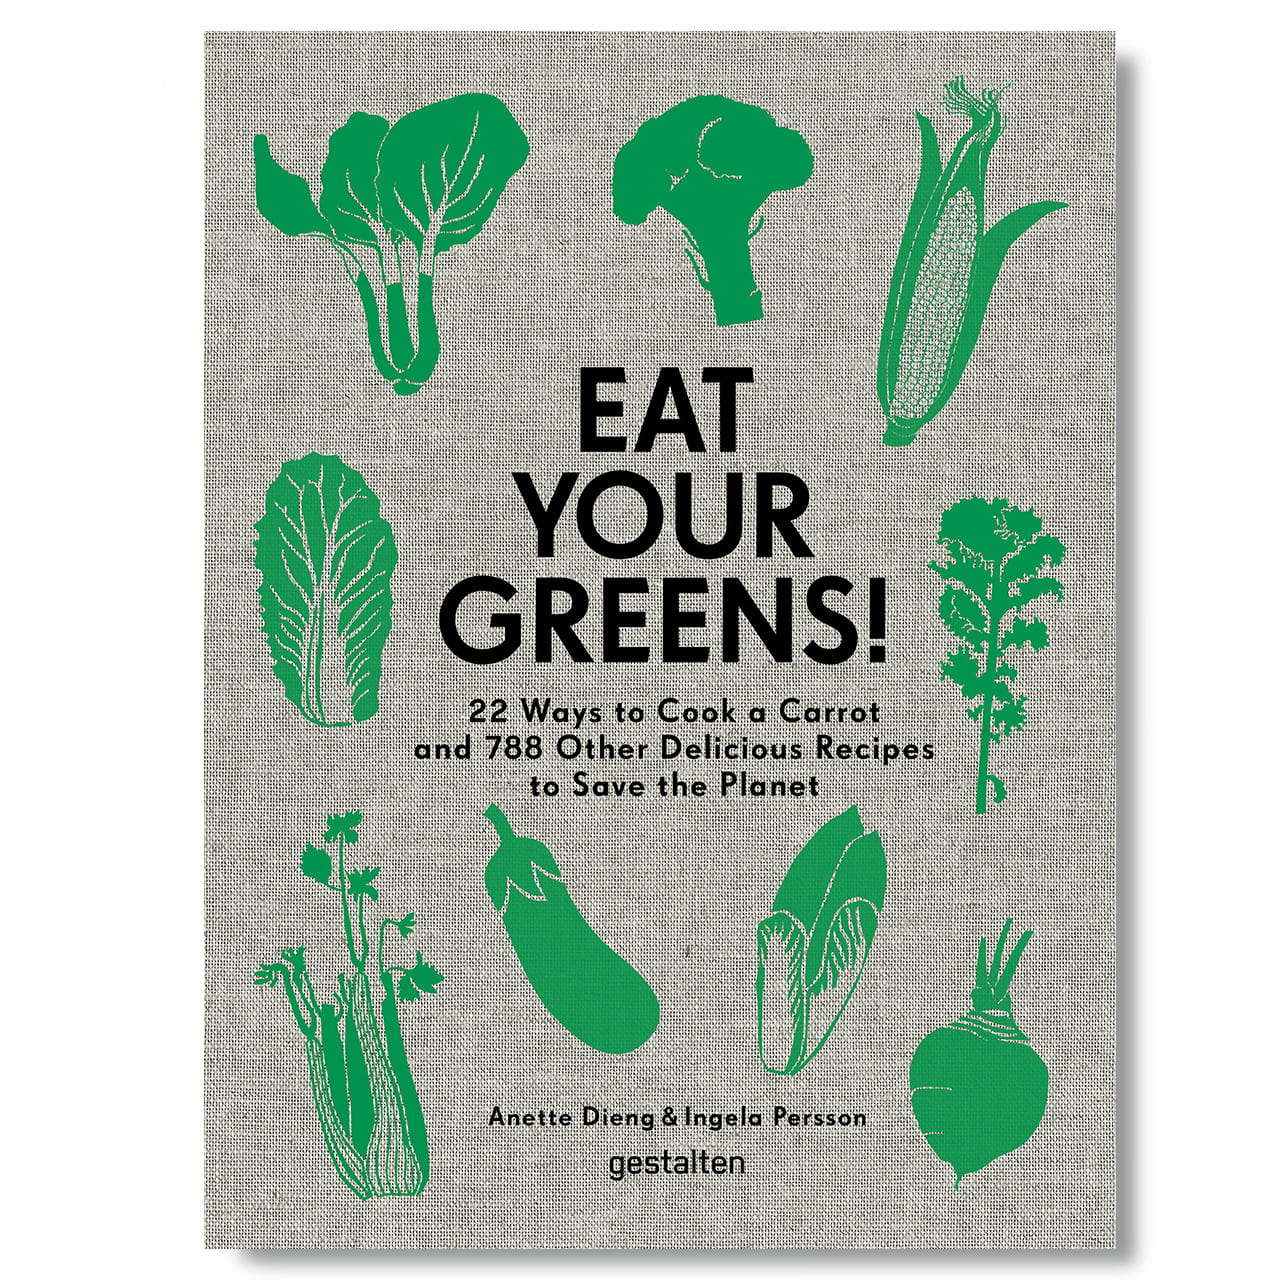 Eat Your Greens! - książka z przepisami wegetariańskimi